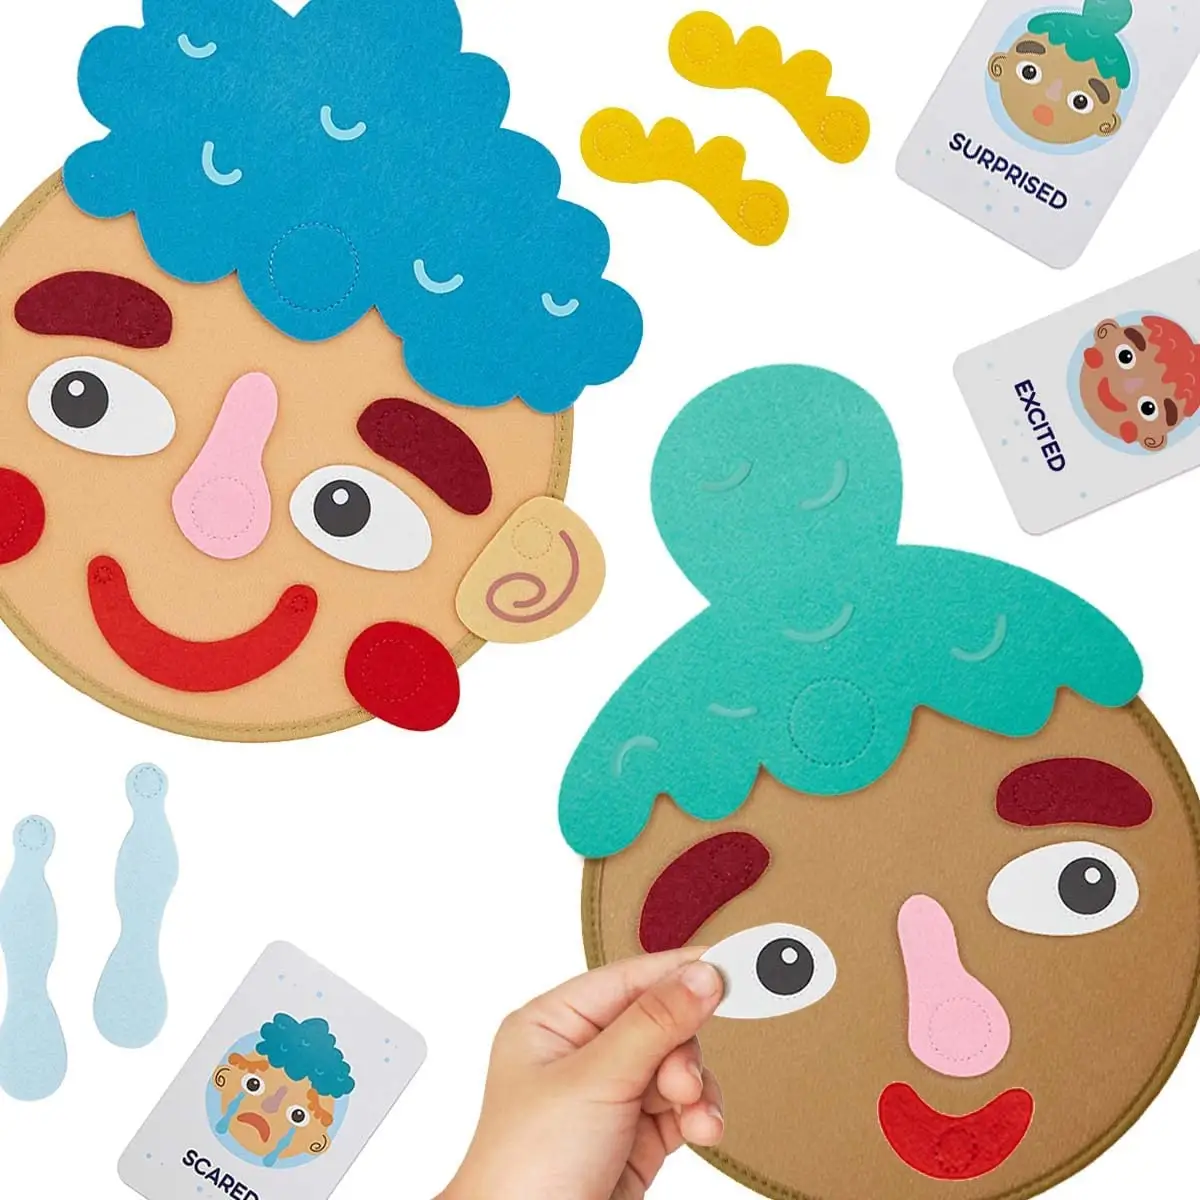 Maak Gezichten En Beschrijf Gevoelens-9 Emotie Flash-Kaarten-Voorschoolse Leeractiviteiten Speelgoed Sociaal Emotioneel Spel Voor Kinderen